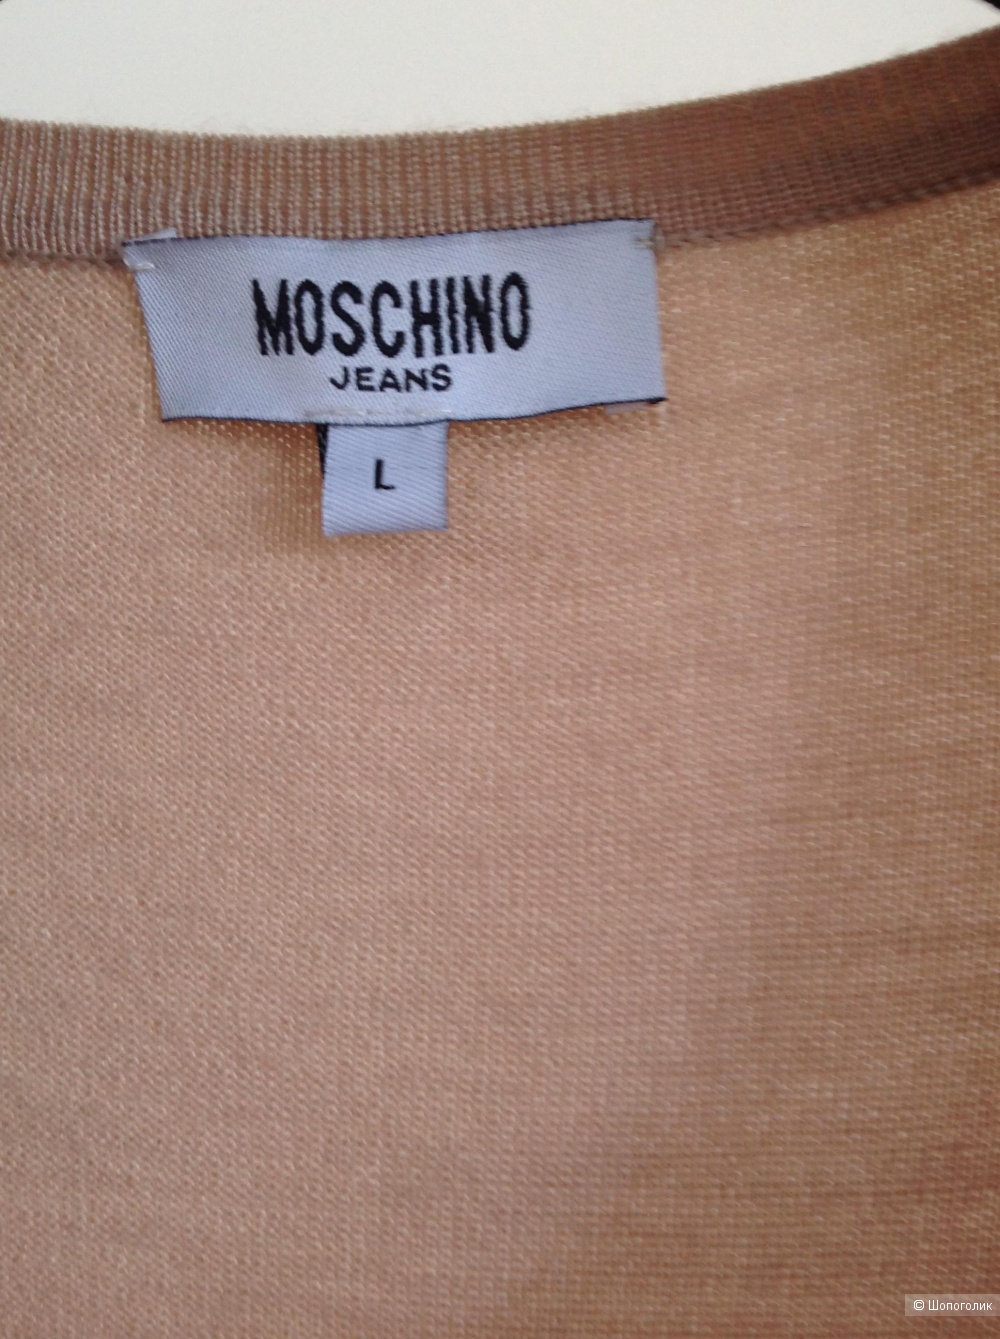 Джемпер Moschino jeans, размер L, на 42-44-46